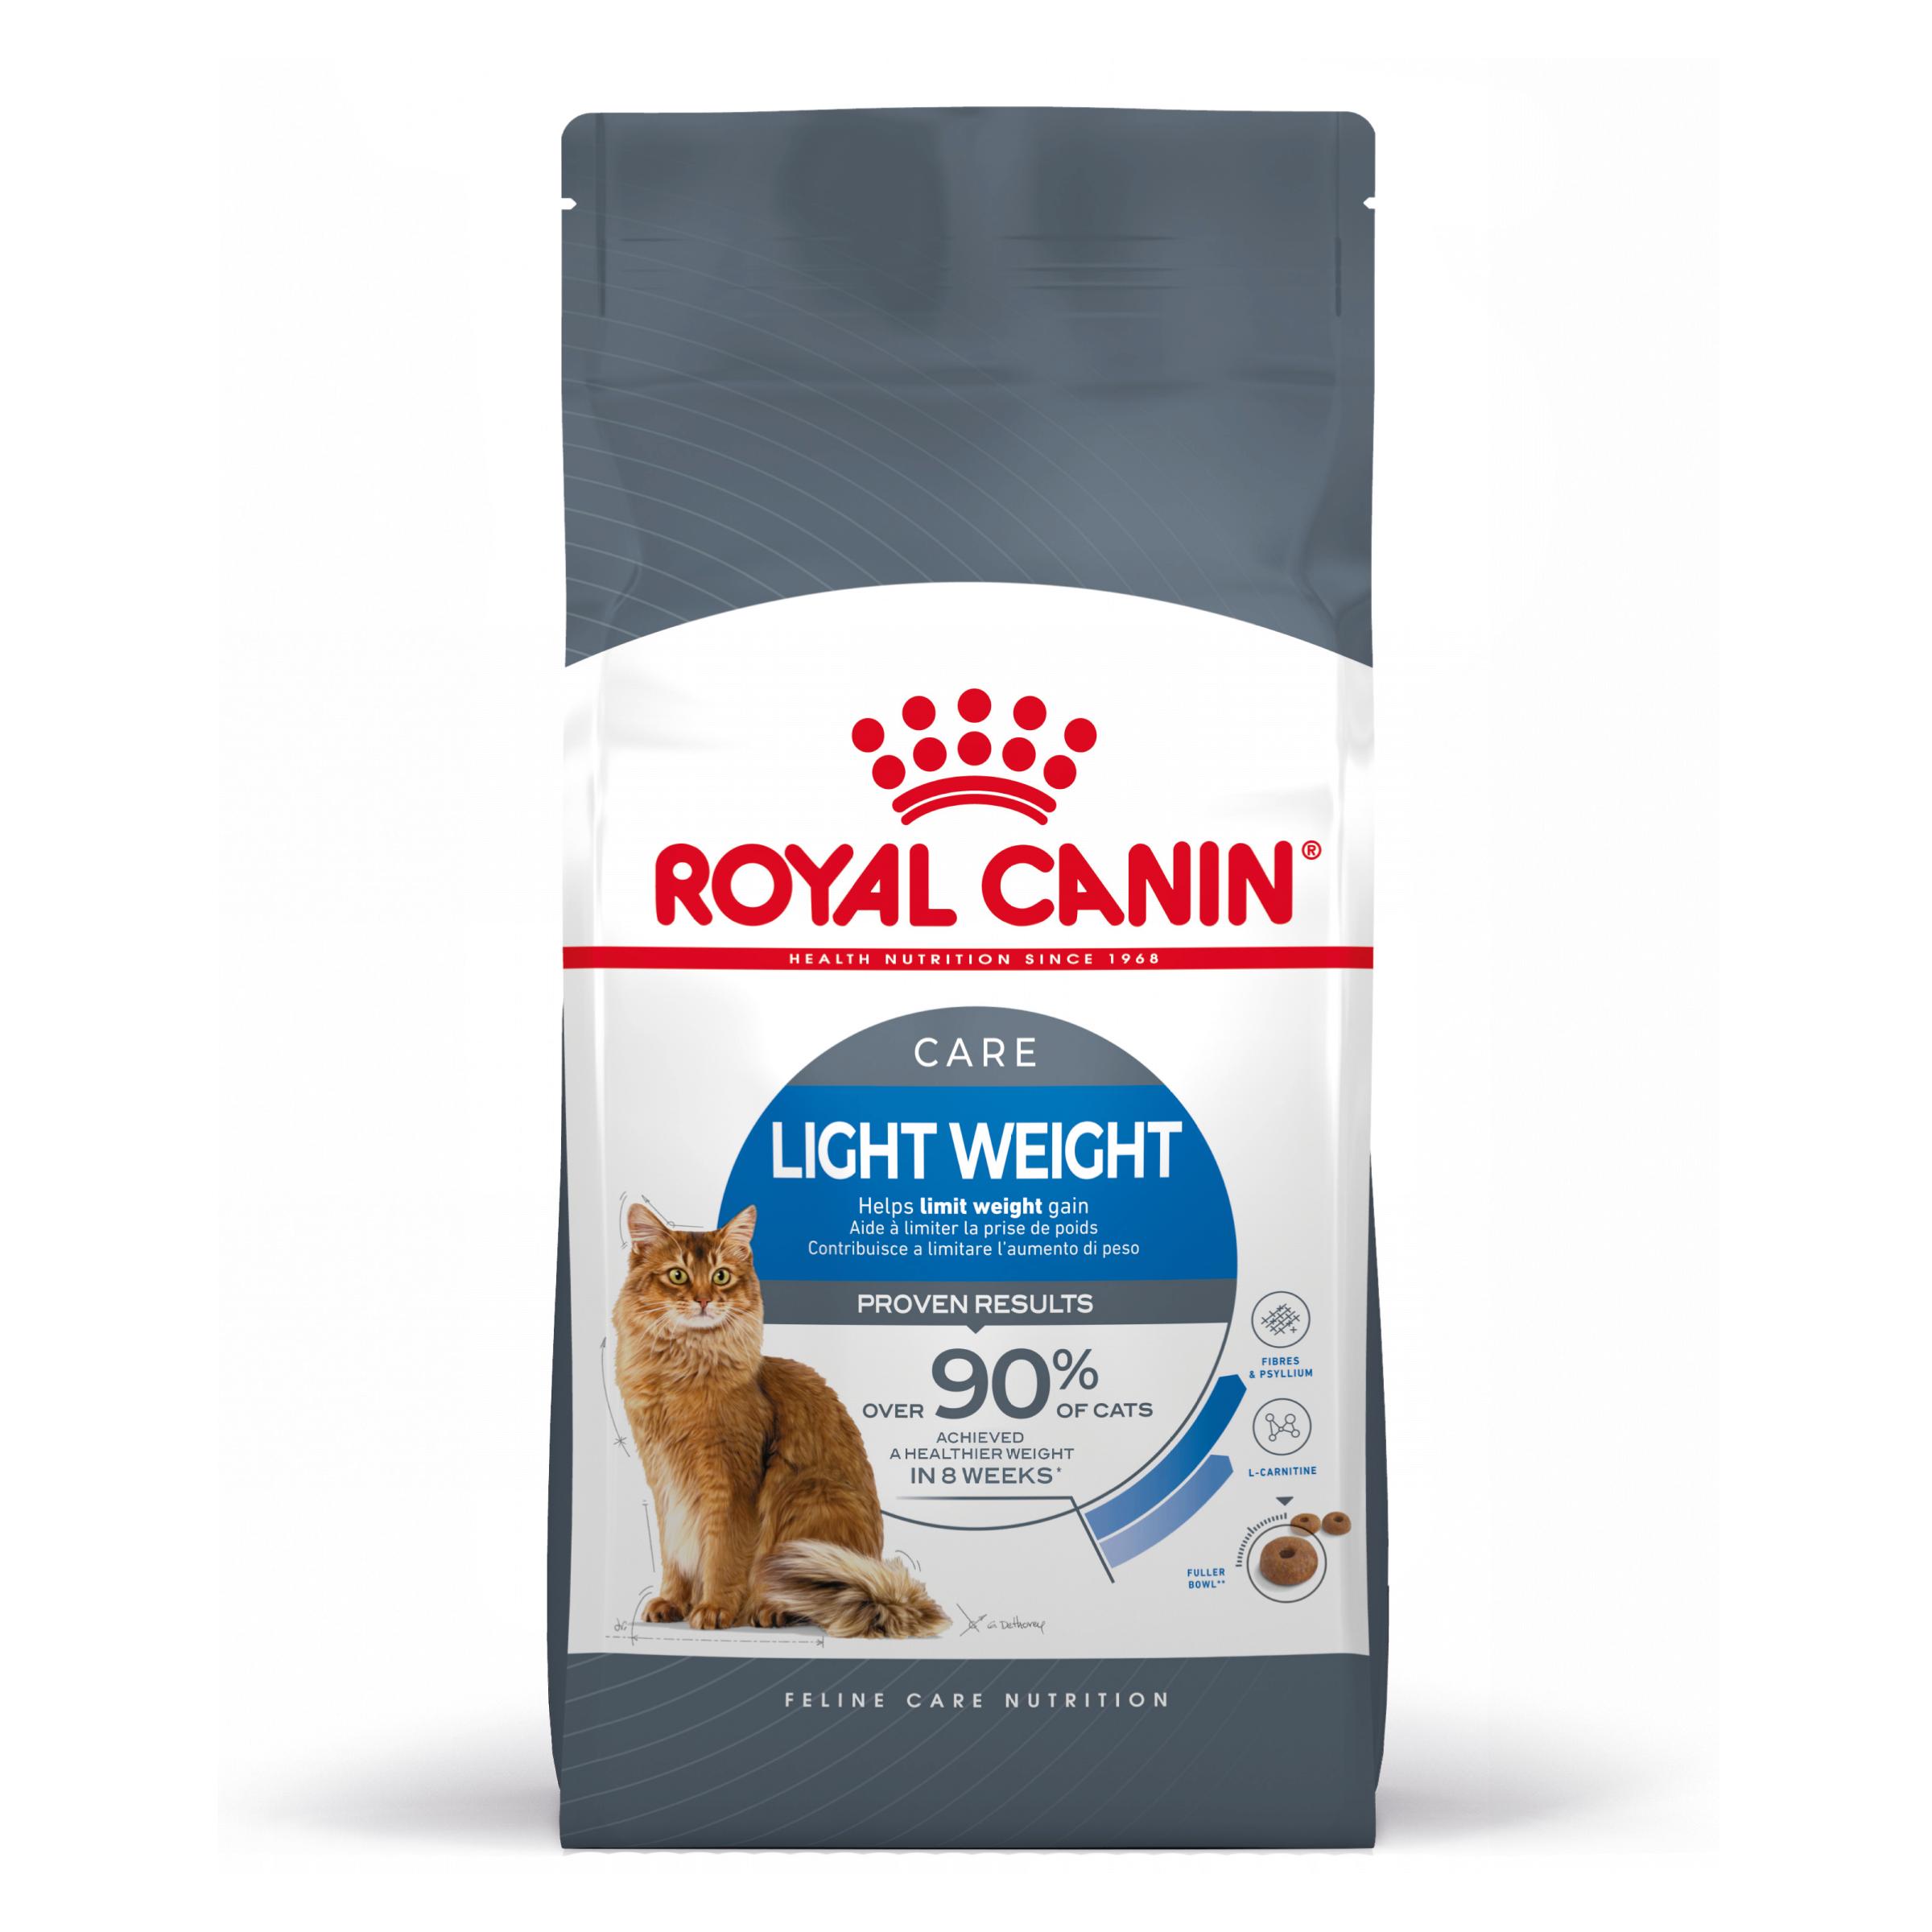 Royal Canin Light Weight Care - Kattenvoer voor katten Aanbevolen om de gewichtstoename te helpen beperken - 8kg